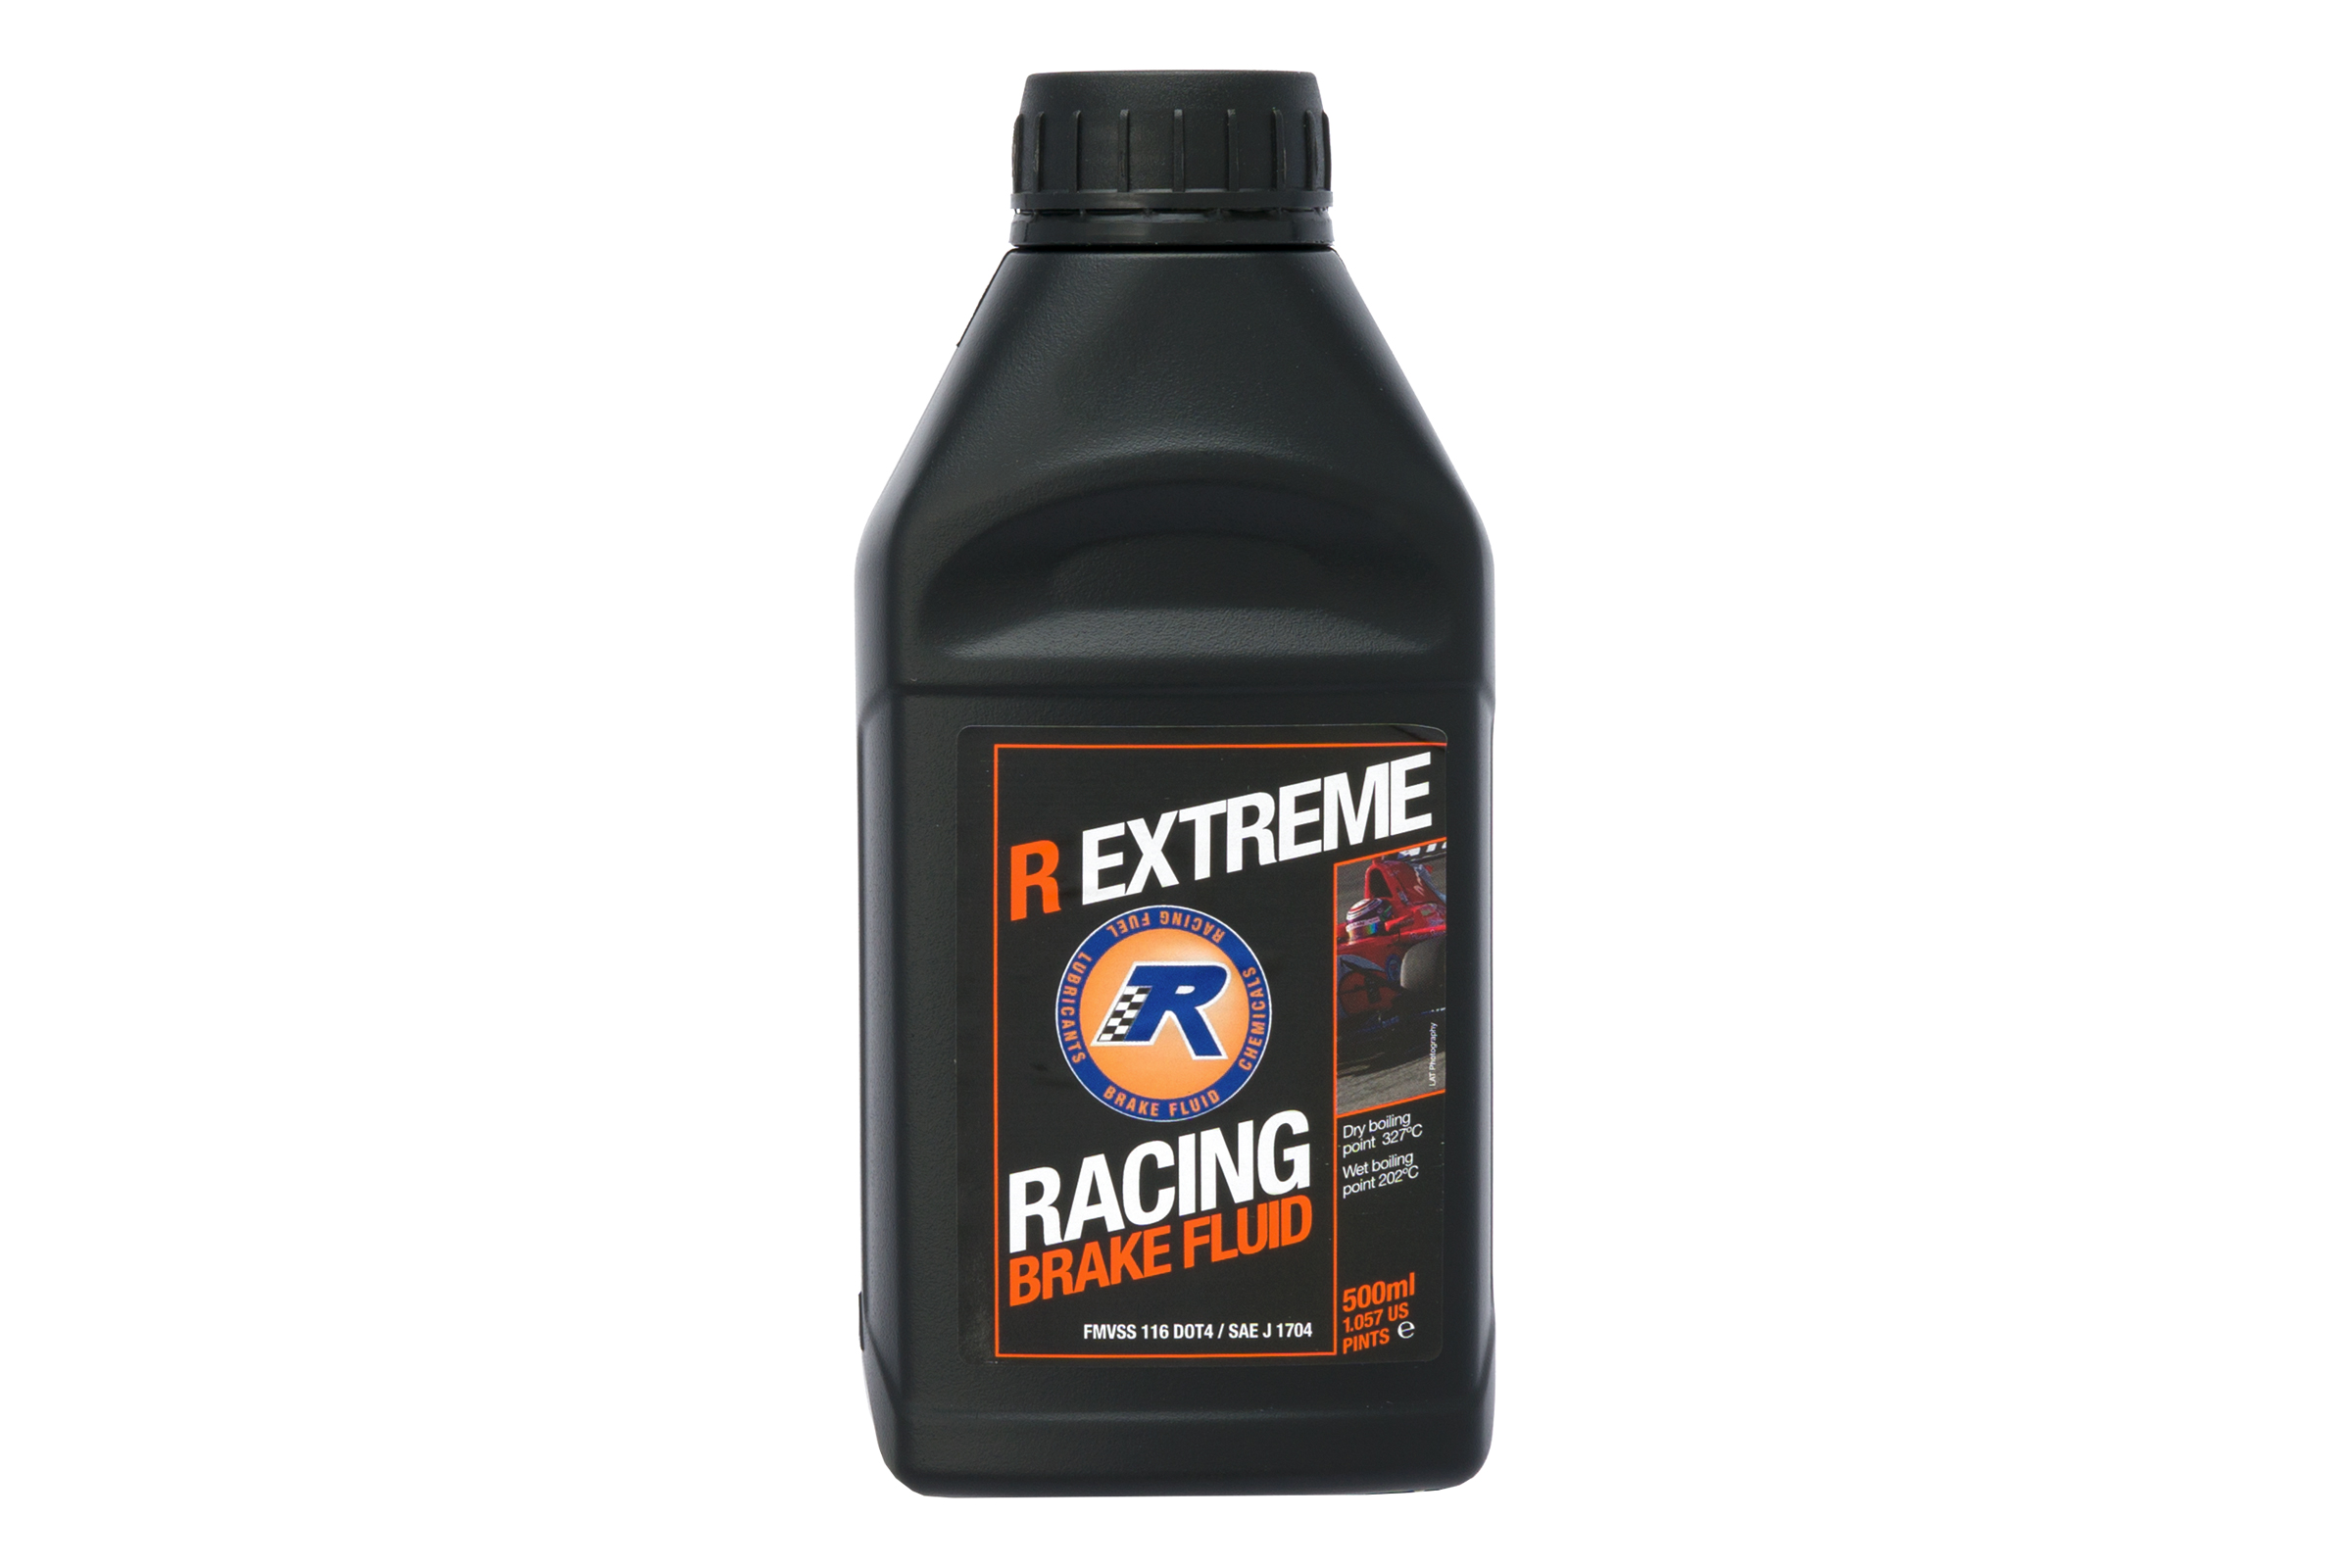 R Extreme Brake Fluid